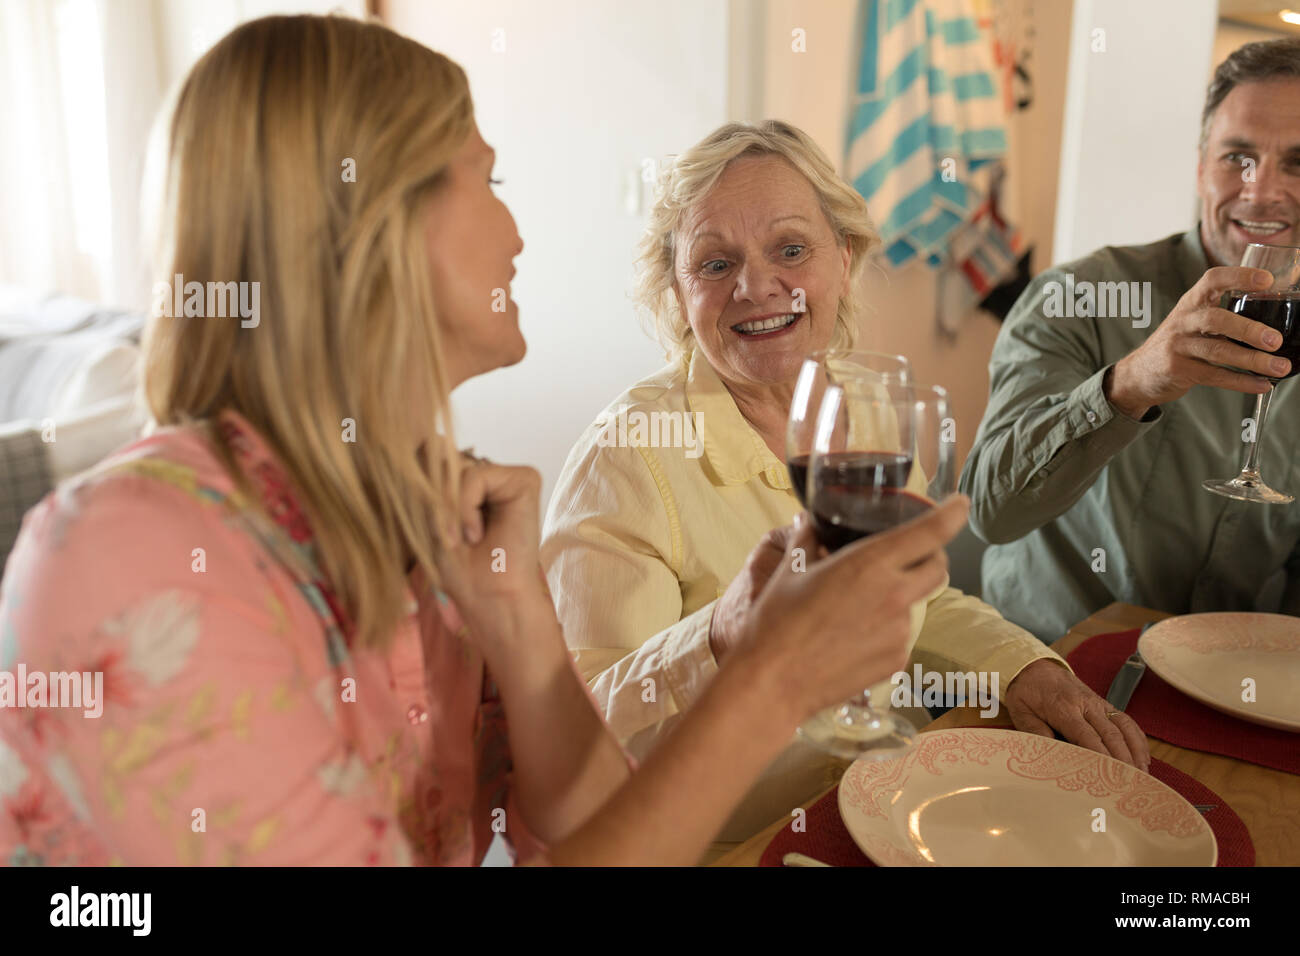 Familie toasten Gläser Wein am Esstisch Stockfoto